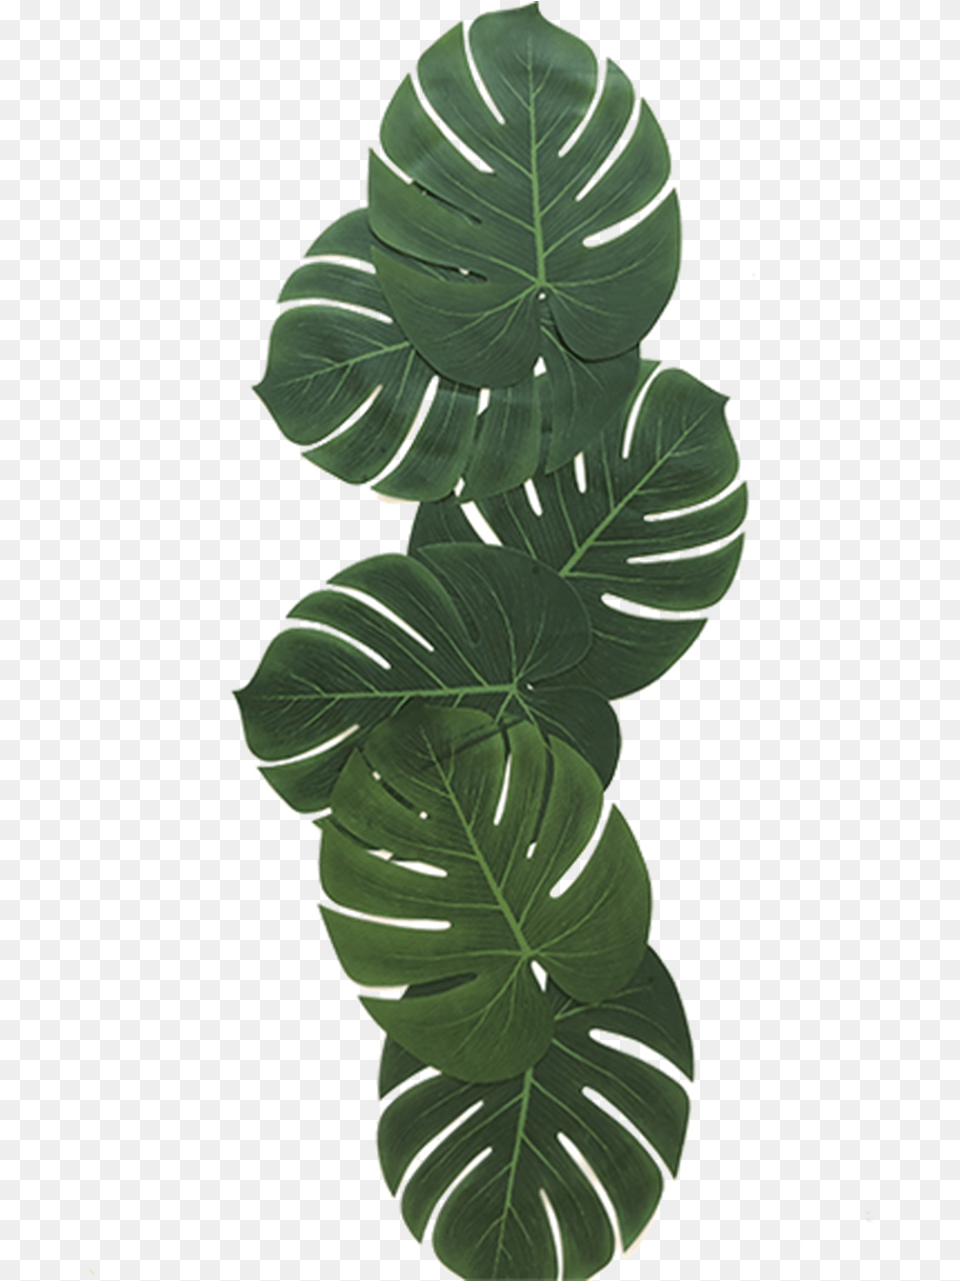 Tropical Leaves Illustration, Leaf, Plant, Flower, Green Free Png Download